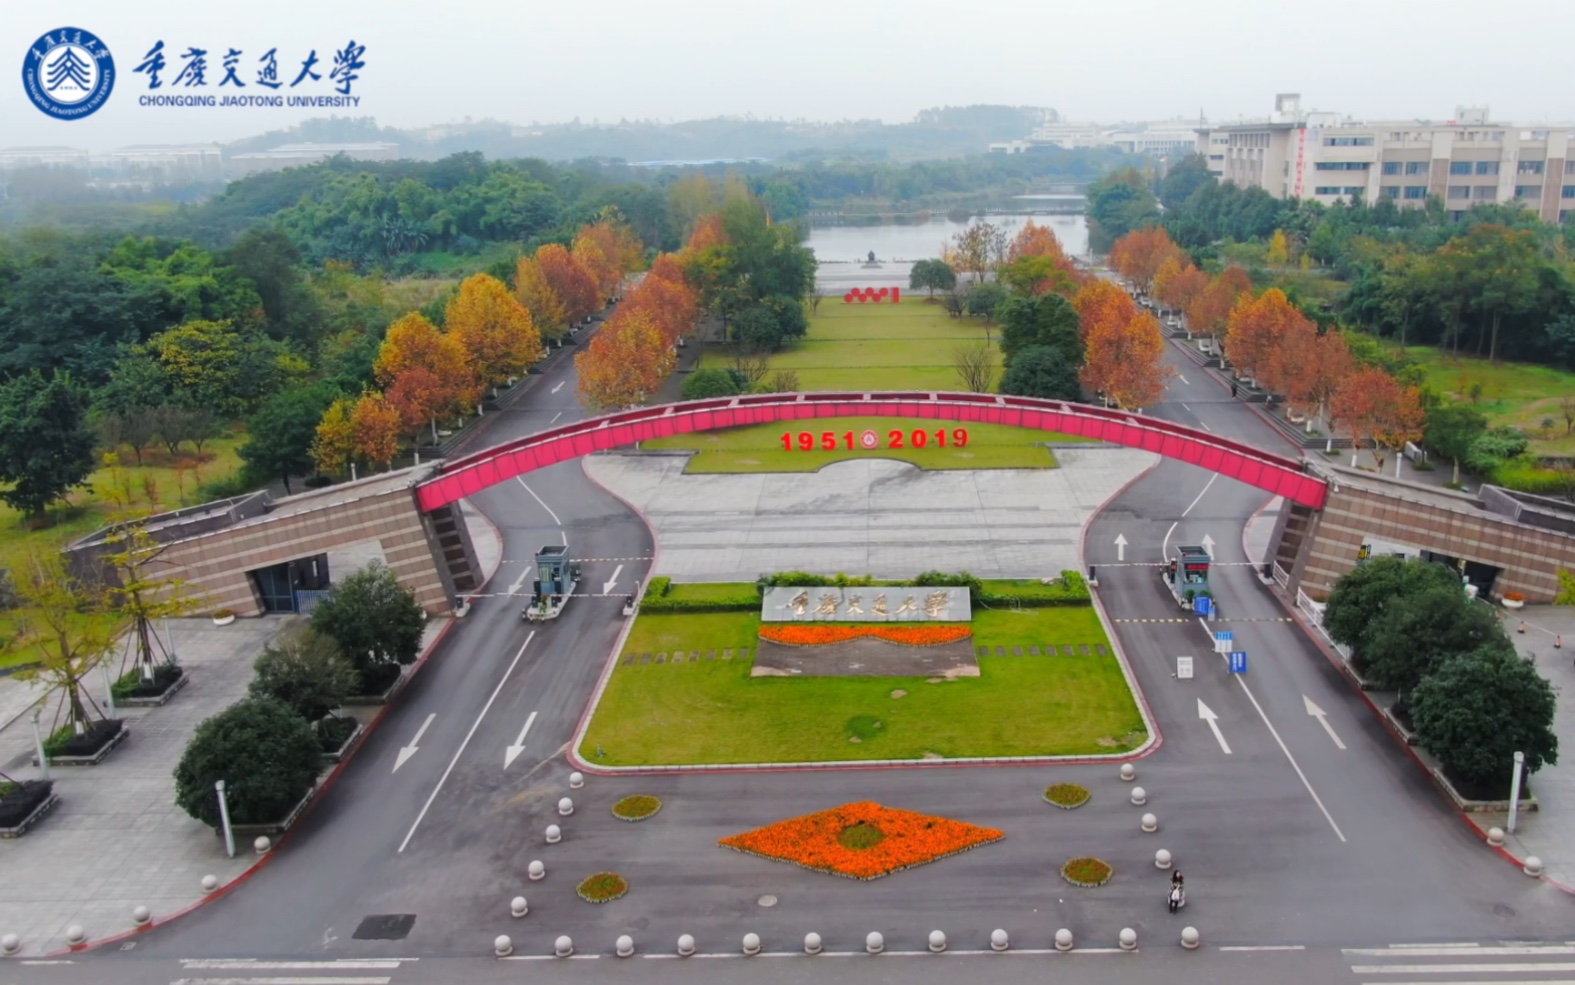 重庆交通大学 全景图片